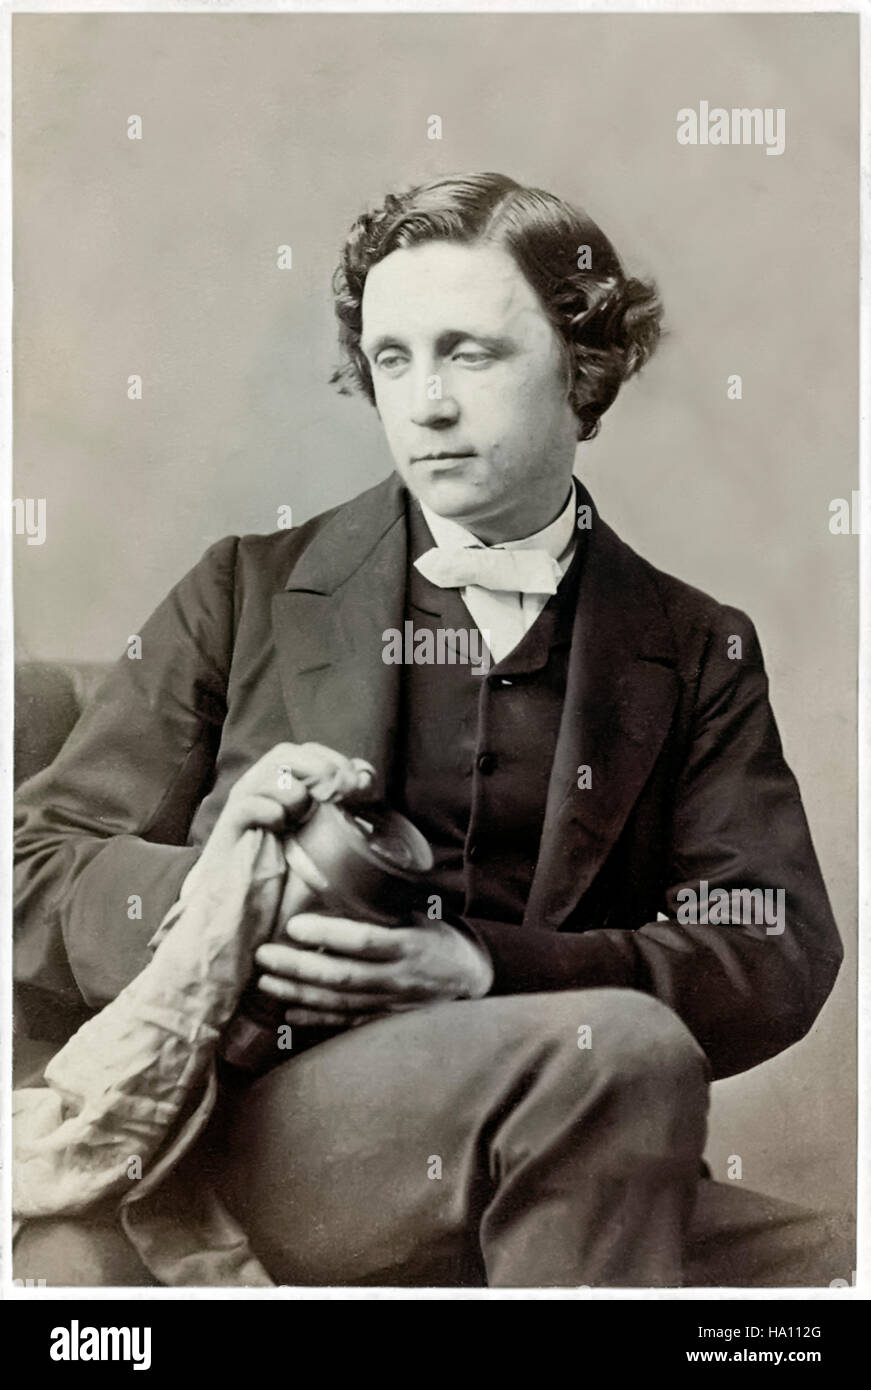 Lewis Carroll (1832-1898), mathématicien anglais, auteur et photographe. Né Charles Lutwidge Dodgson, il adopte le nom de plume de Lewis Carroll publie Alice's Adventures in Wonderland, en 1865. Voir la description pour plus d'informations. Banque D'Images